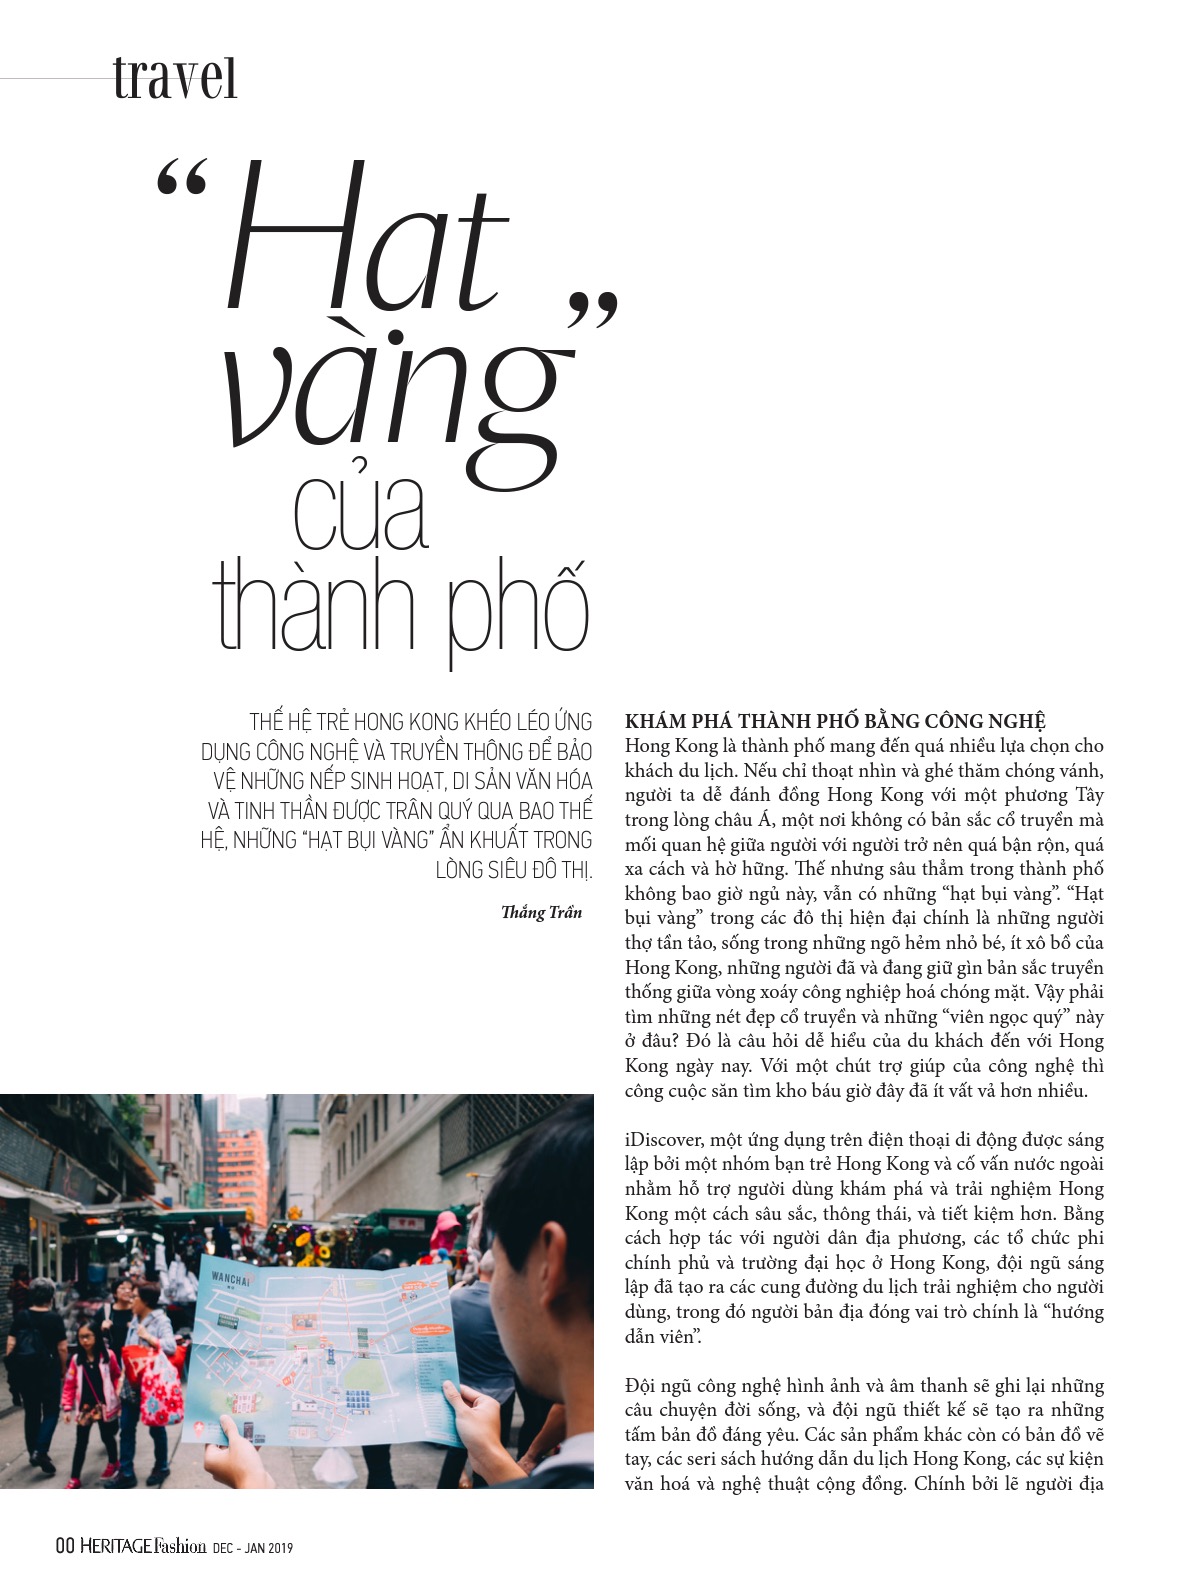 Thang Tran là một nhà nhiếp ảnh tài năng với khả năng ghi lại các khoảng khắc đẹp đến ngạc nhiên. Hãy xem hình ảnh của Thang Tran để thấy những tác phẩm tuyệt vời và khám phá tầm nhìn đặc biệt của ông trong nhiếp ảnh.